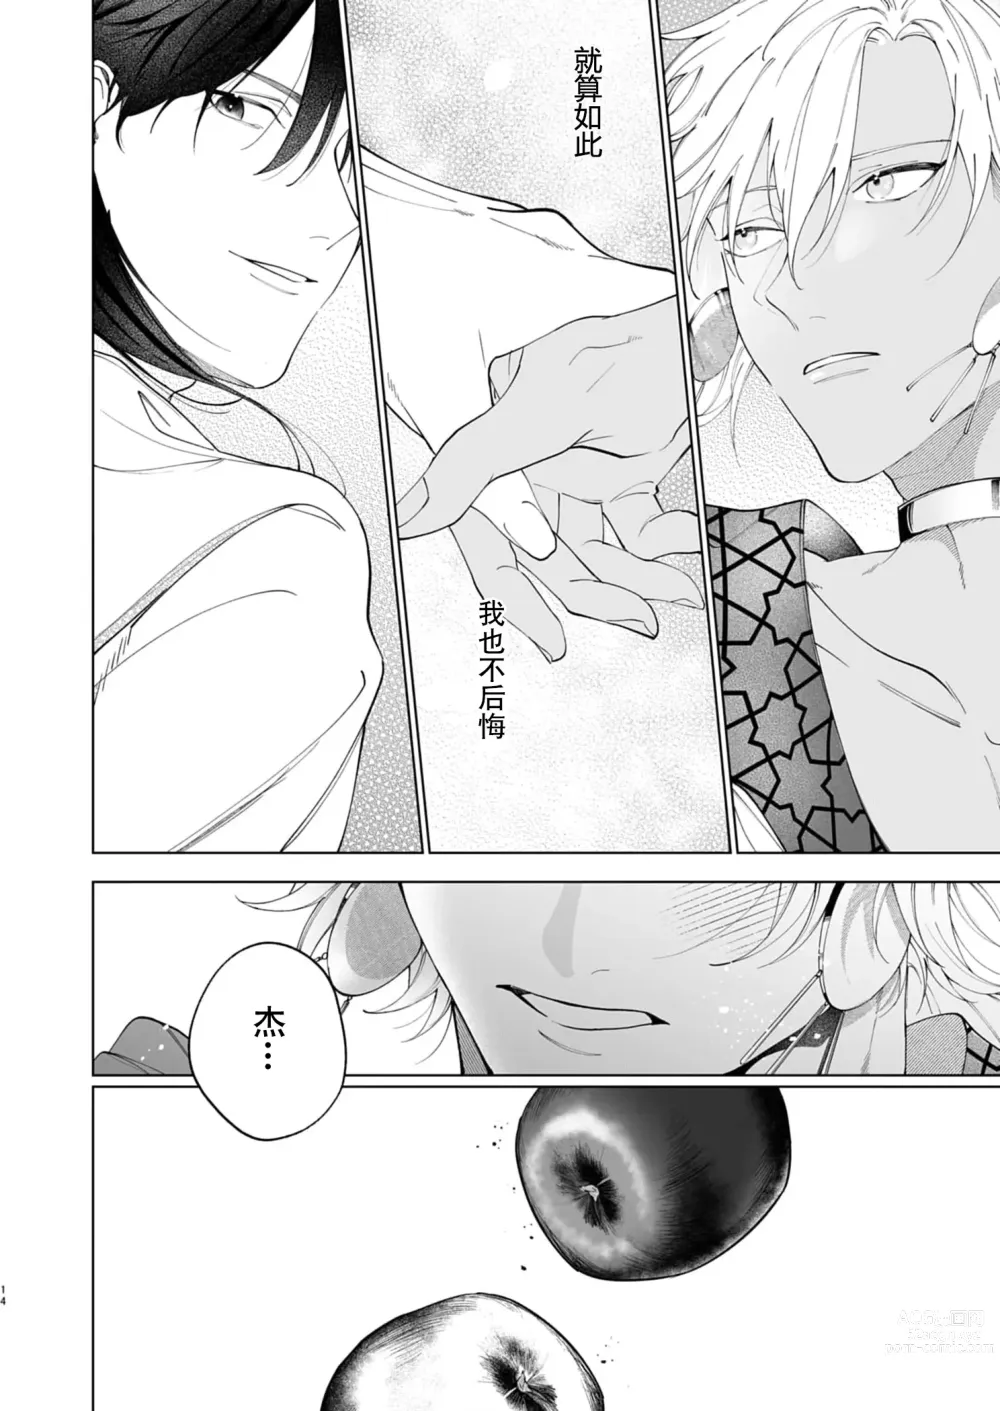 Page 76 of manga 籠獄中的新娘 1-3